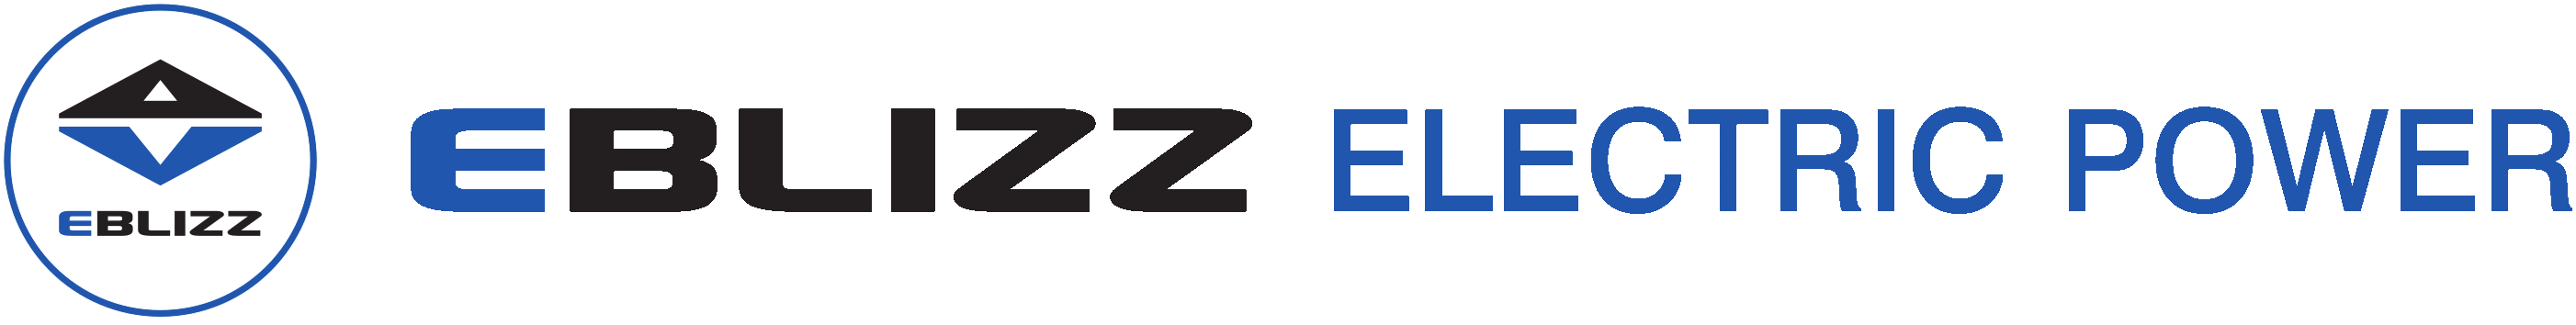 EBLIZZ Logo